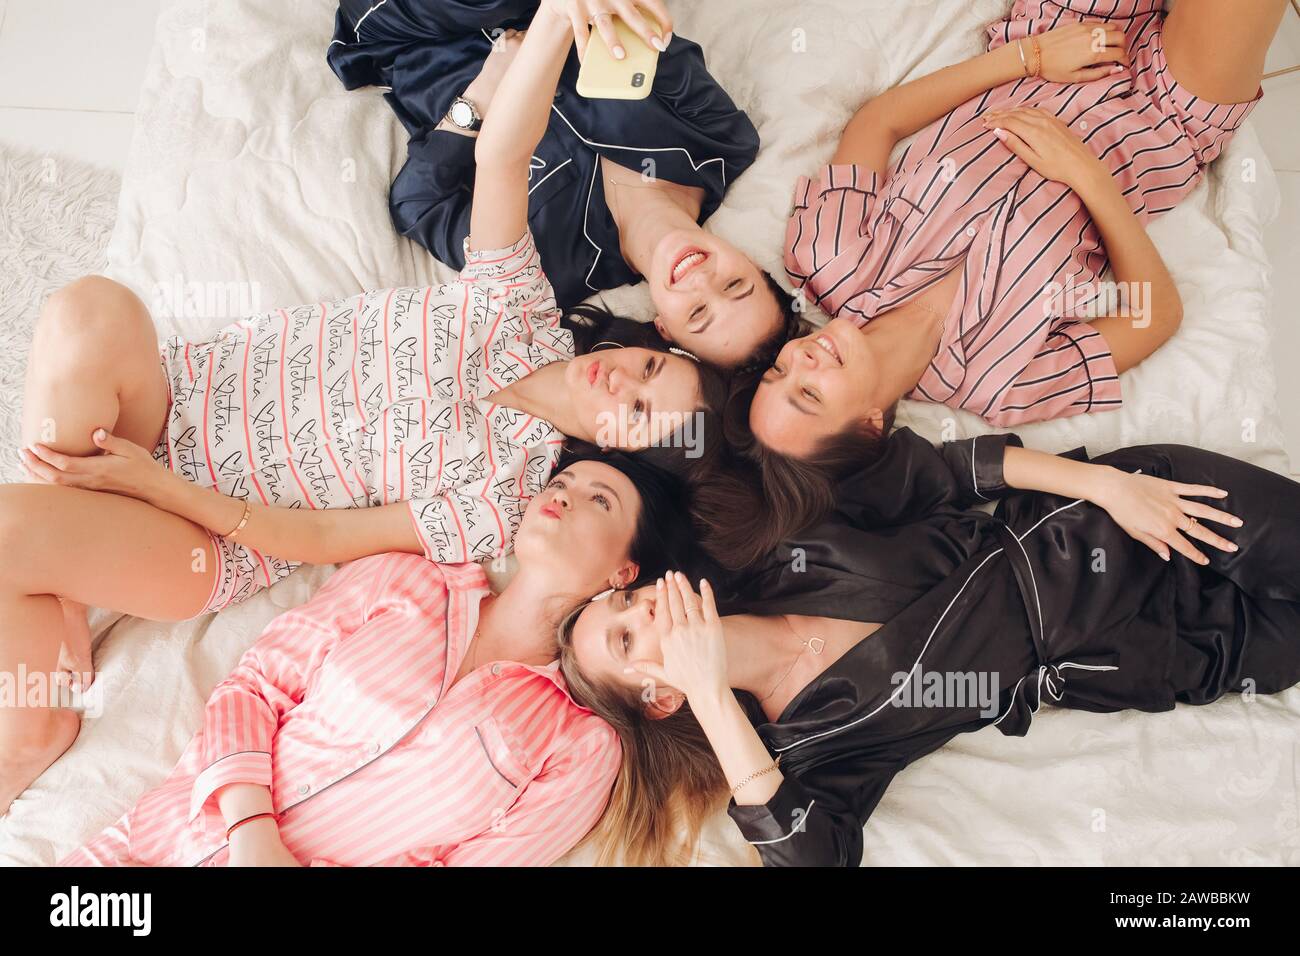 Hübsche Mädchen im Schlafanzug, die selfie ins Bett nehmen Stockfotografie  - Alamy